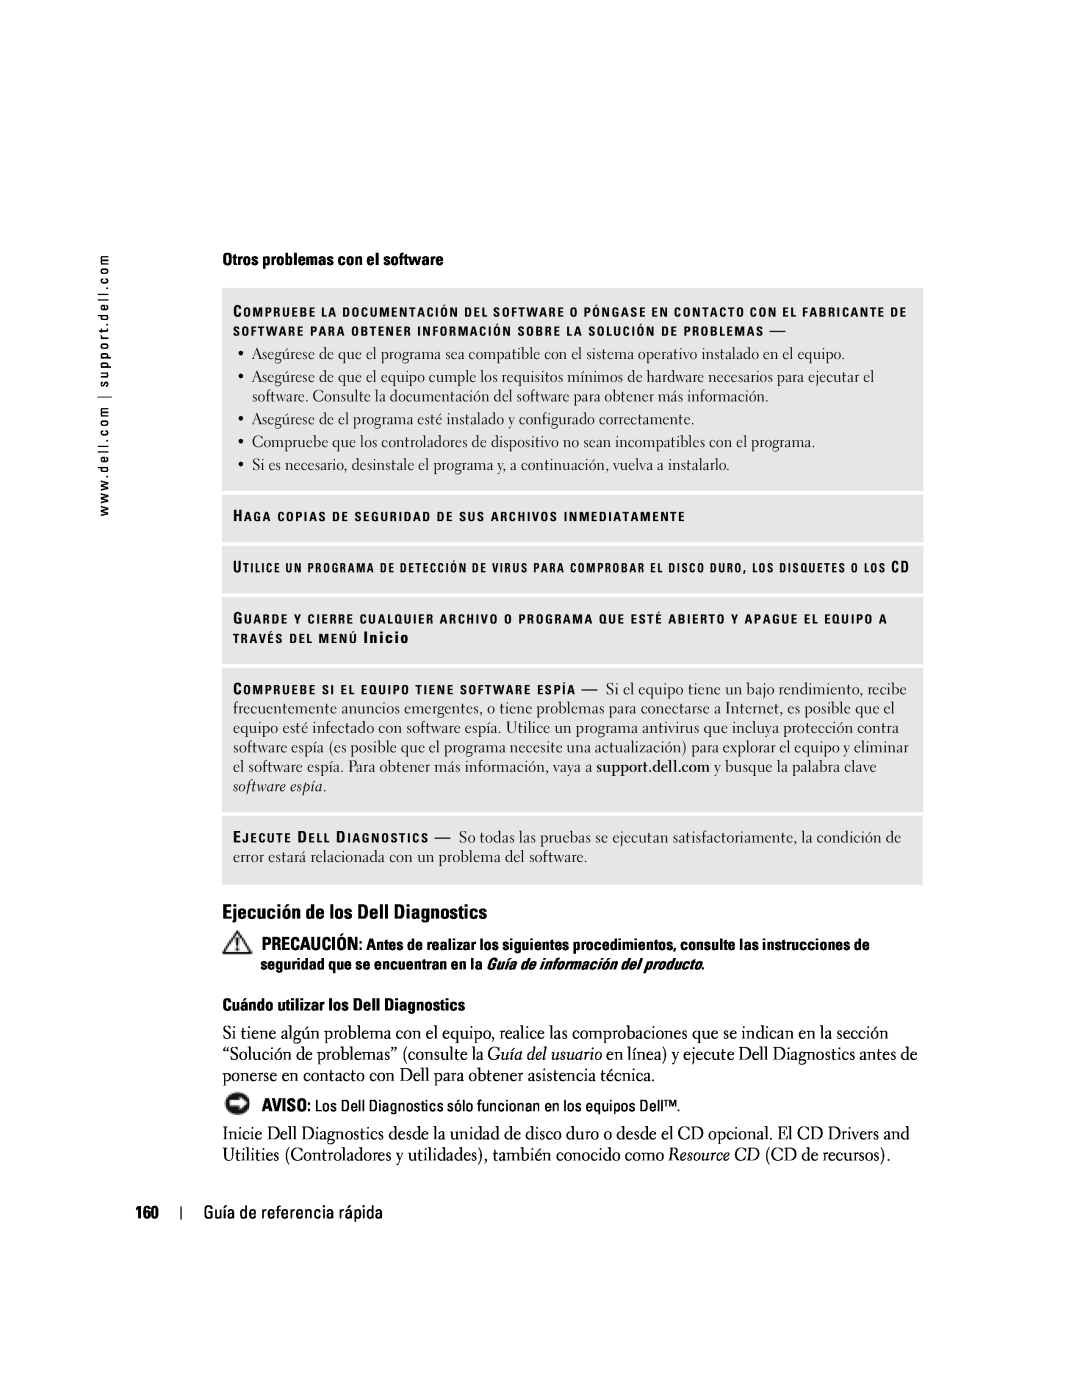 Dell PP06S manual Ejecución de los Dell Diagnostics 